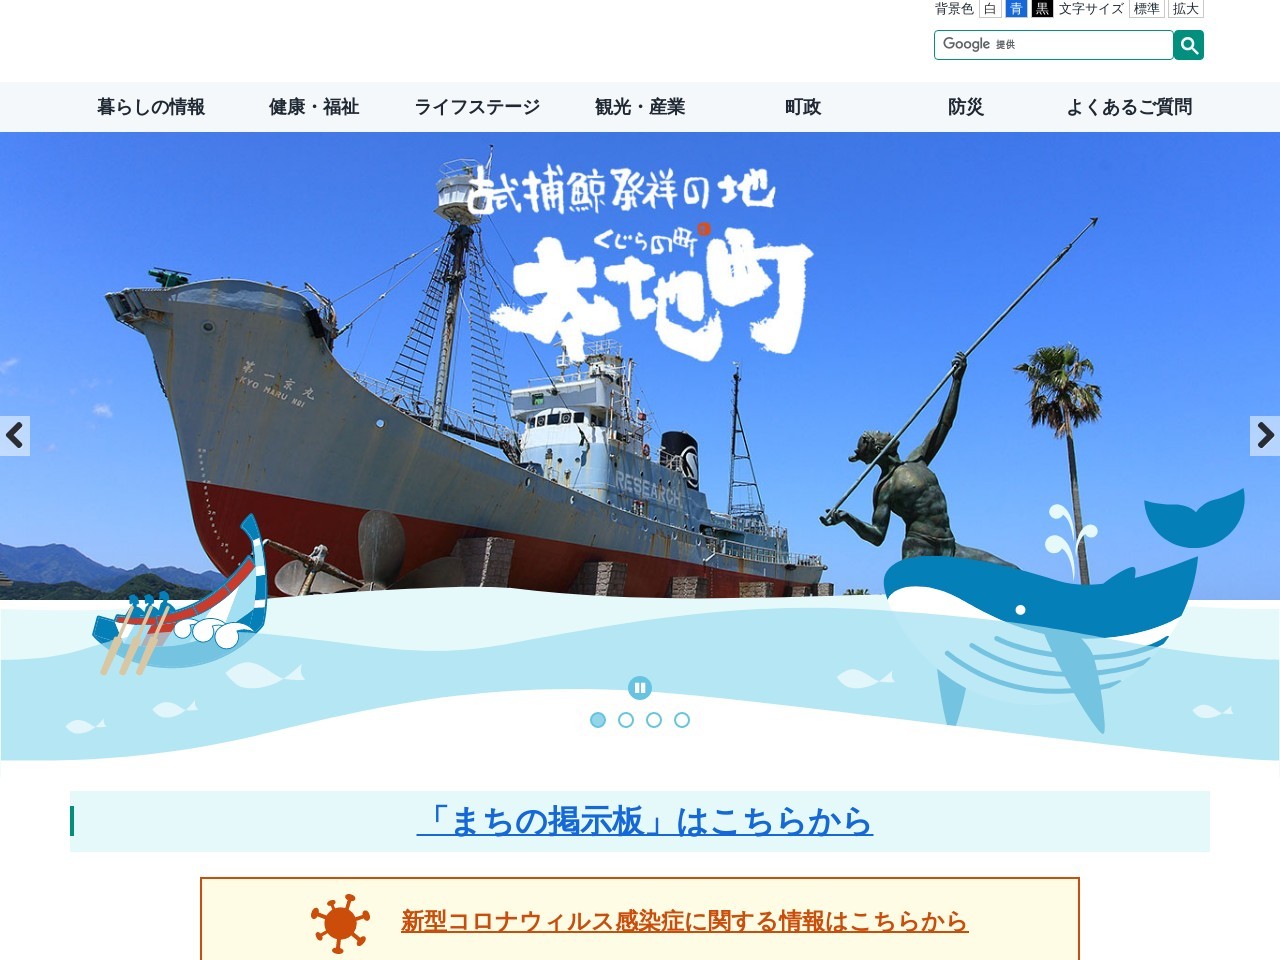 捕鯨船（第一京丸）展示場のクチコミ・評判とホームページ